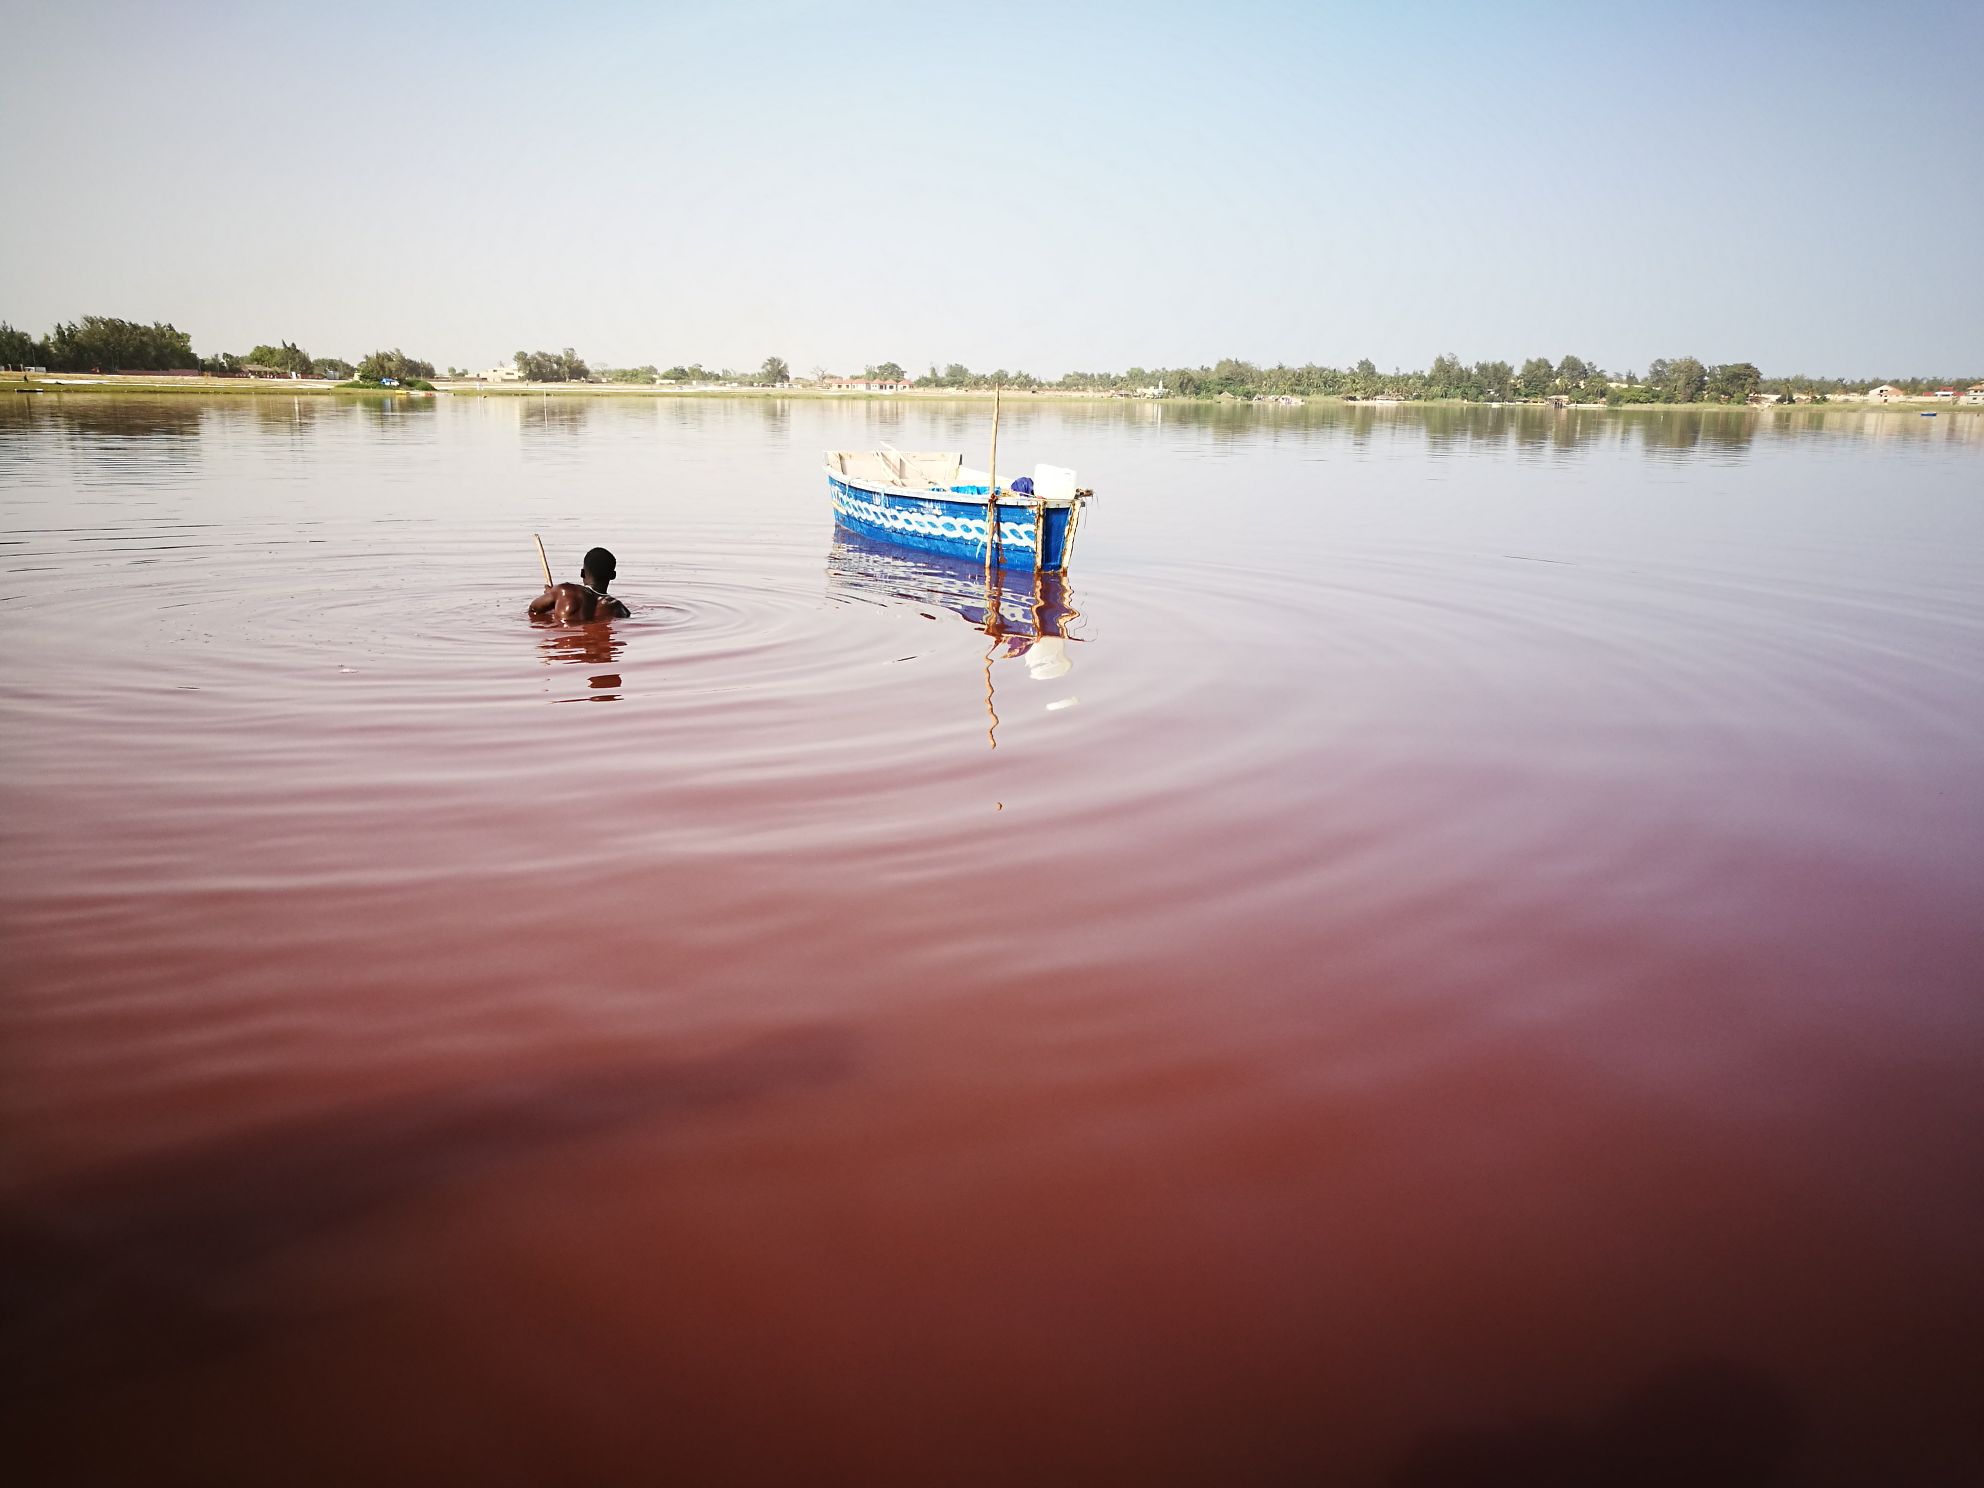 达喀尔，雷特巴（玫瑰）湖。湖中有嗜极菌，这种喜盐生物在浓度高达每升水含80—300克盐的湖中旺盛生长